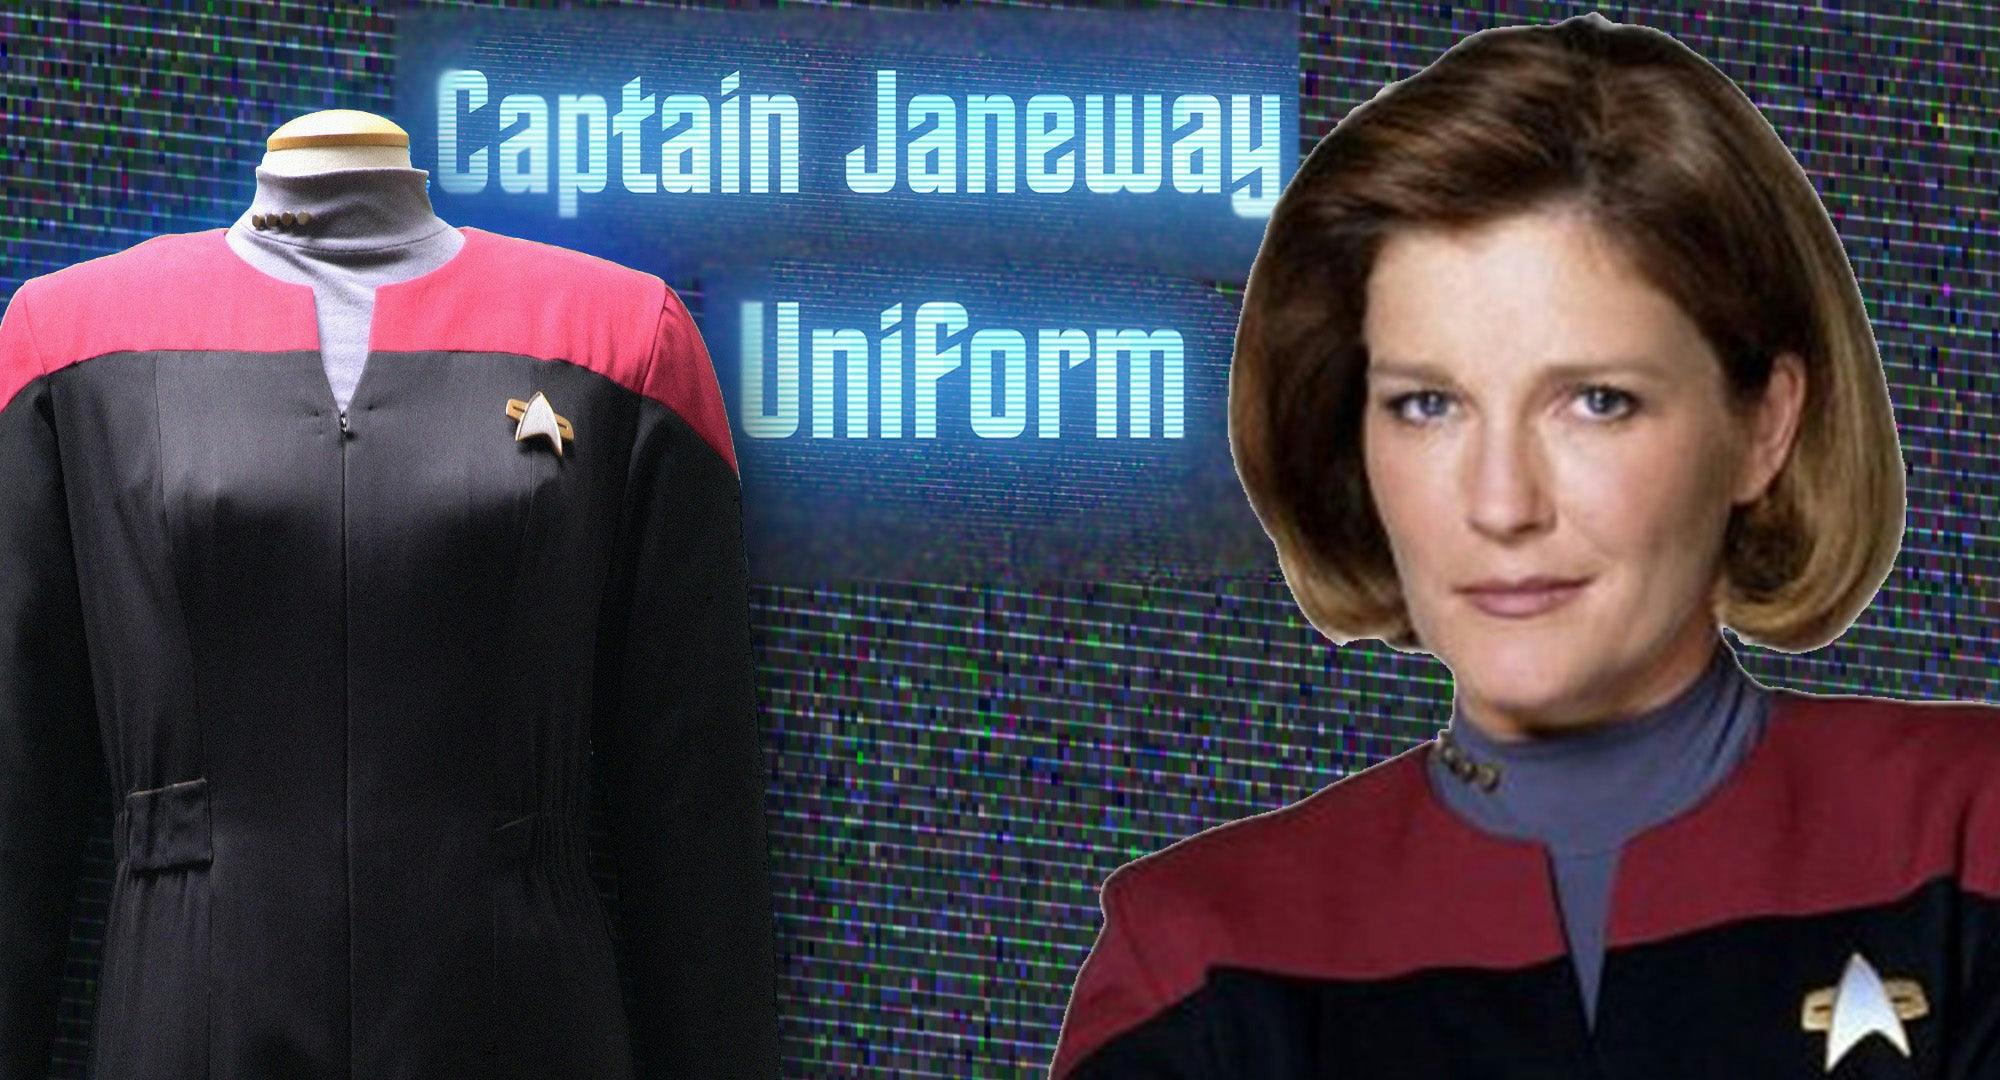 Captain Janeway's uniform